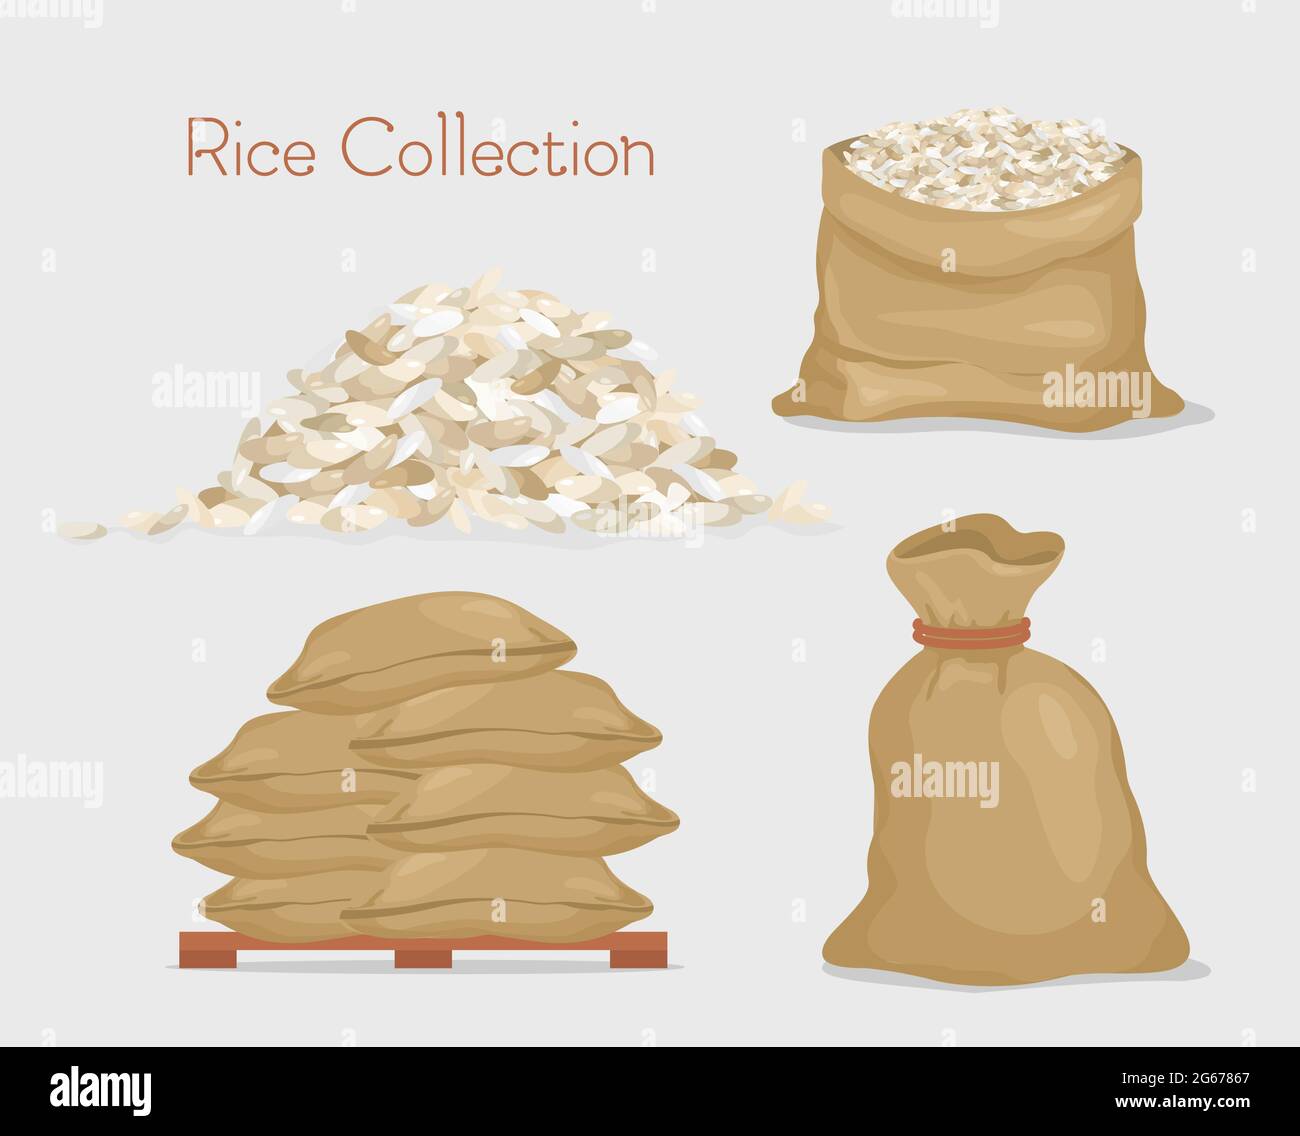 Vektor-Illustration der Reissammlung. Beutel mit Reis, Paket, Reiskörner isoliert auf dem grauen Hintergrund in flachem Stil. Stock Vektor